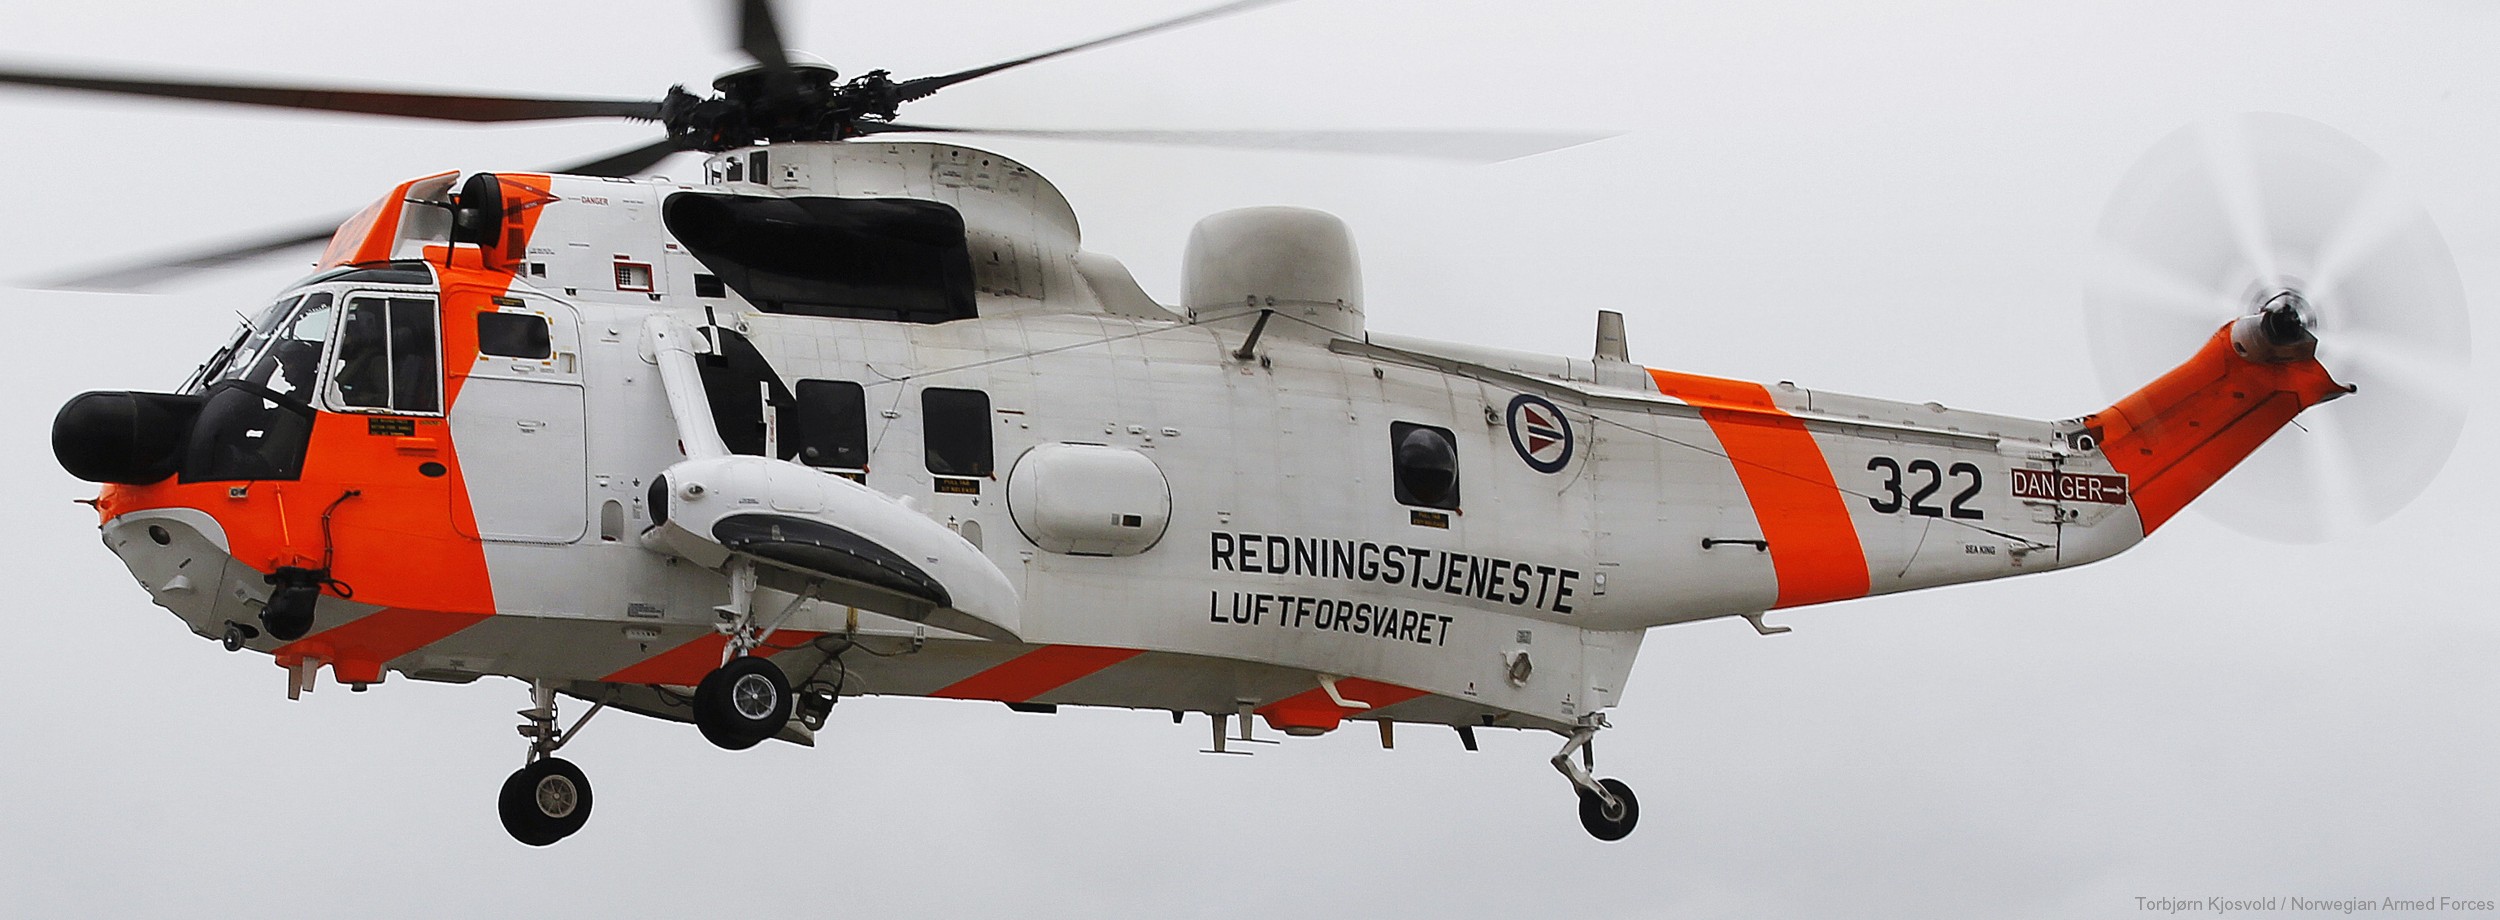 westland ws-61 sea king royal norwegian air force sar rescue 330 squadron skvadron luftforsvaret 322 03